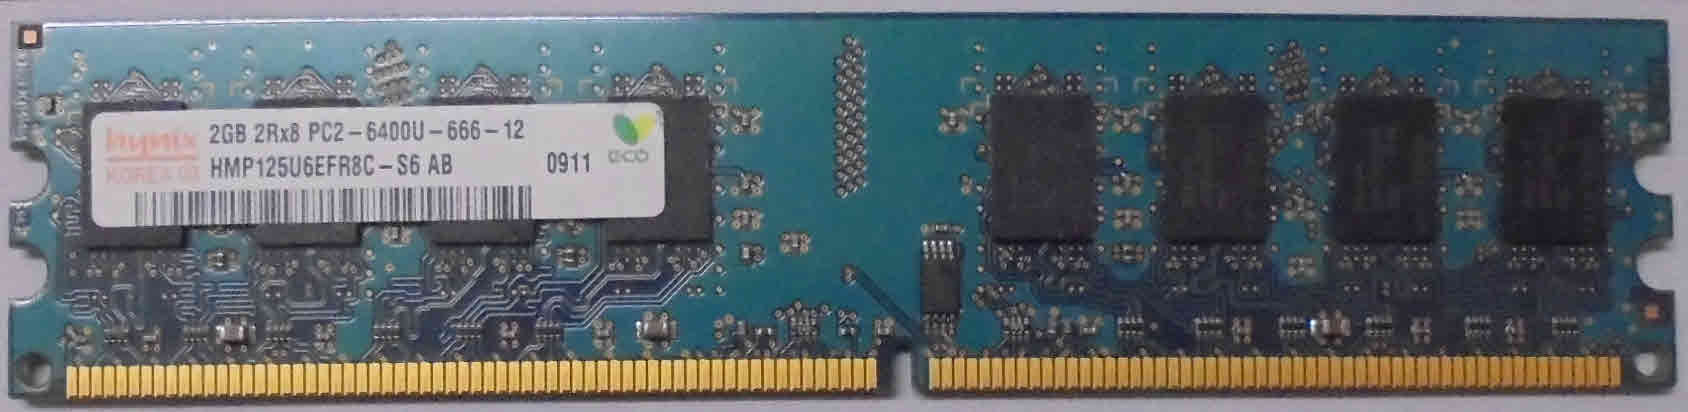 2GB 2Rx8 PC2-6400U-666-12 SKhynix